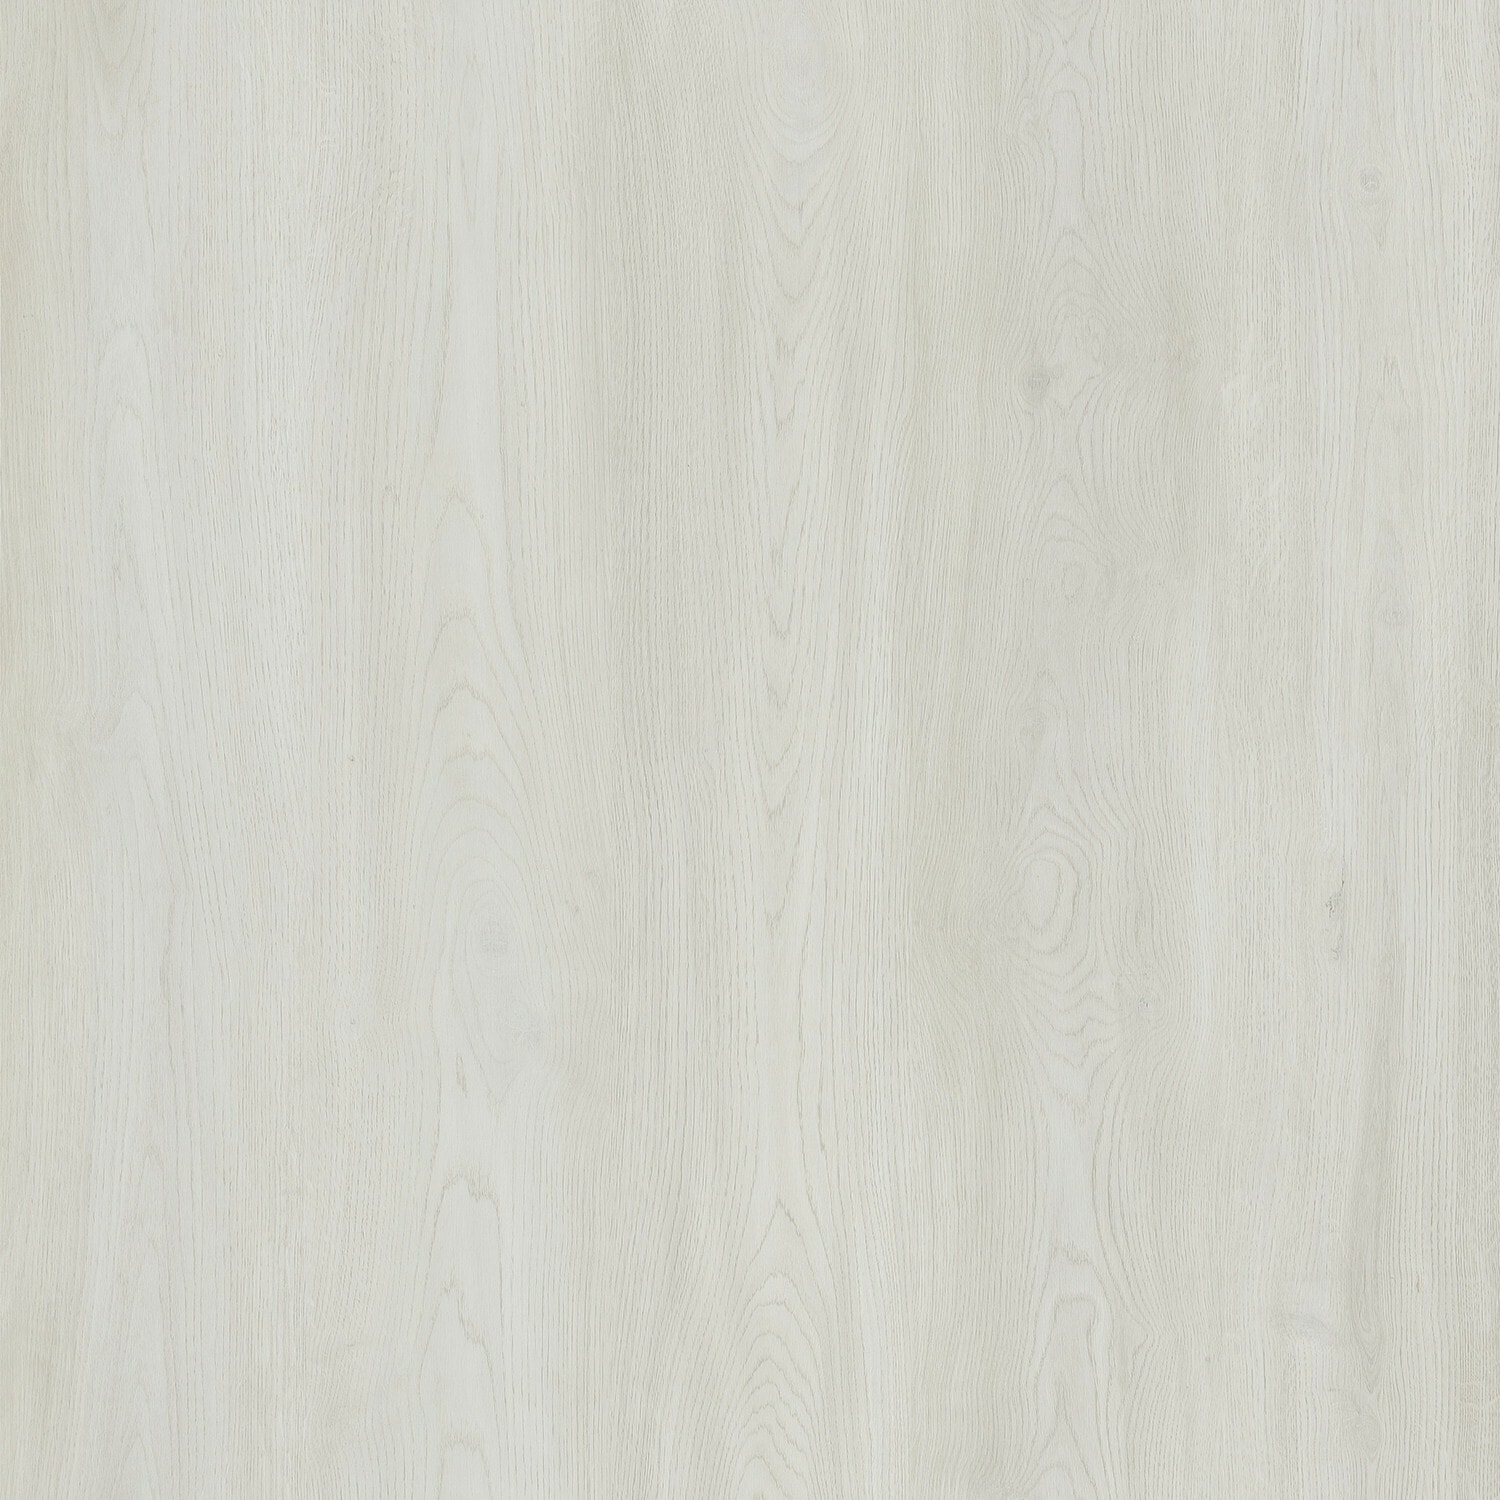 Whitewood: Tận hưởng vẻ đẹp thiên nhiên và tinh tế của loại gỗ trắng thông qua bộ sưu tập ảnh liên quan. Sự tinh tế và sự bền bỉ của whitewood sẽ khiến bạn ấn tượng ngay từ cái nhìn đầu tiên.